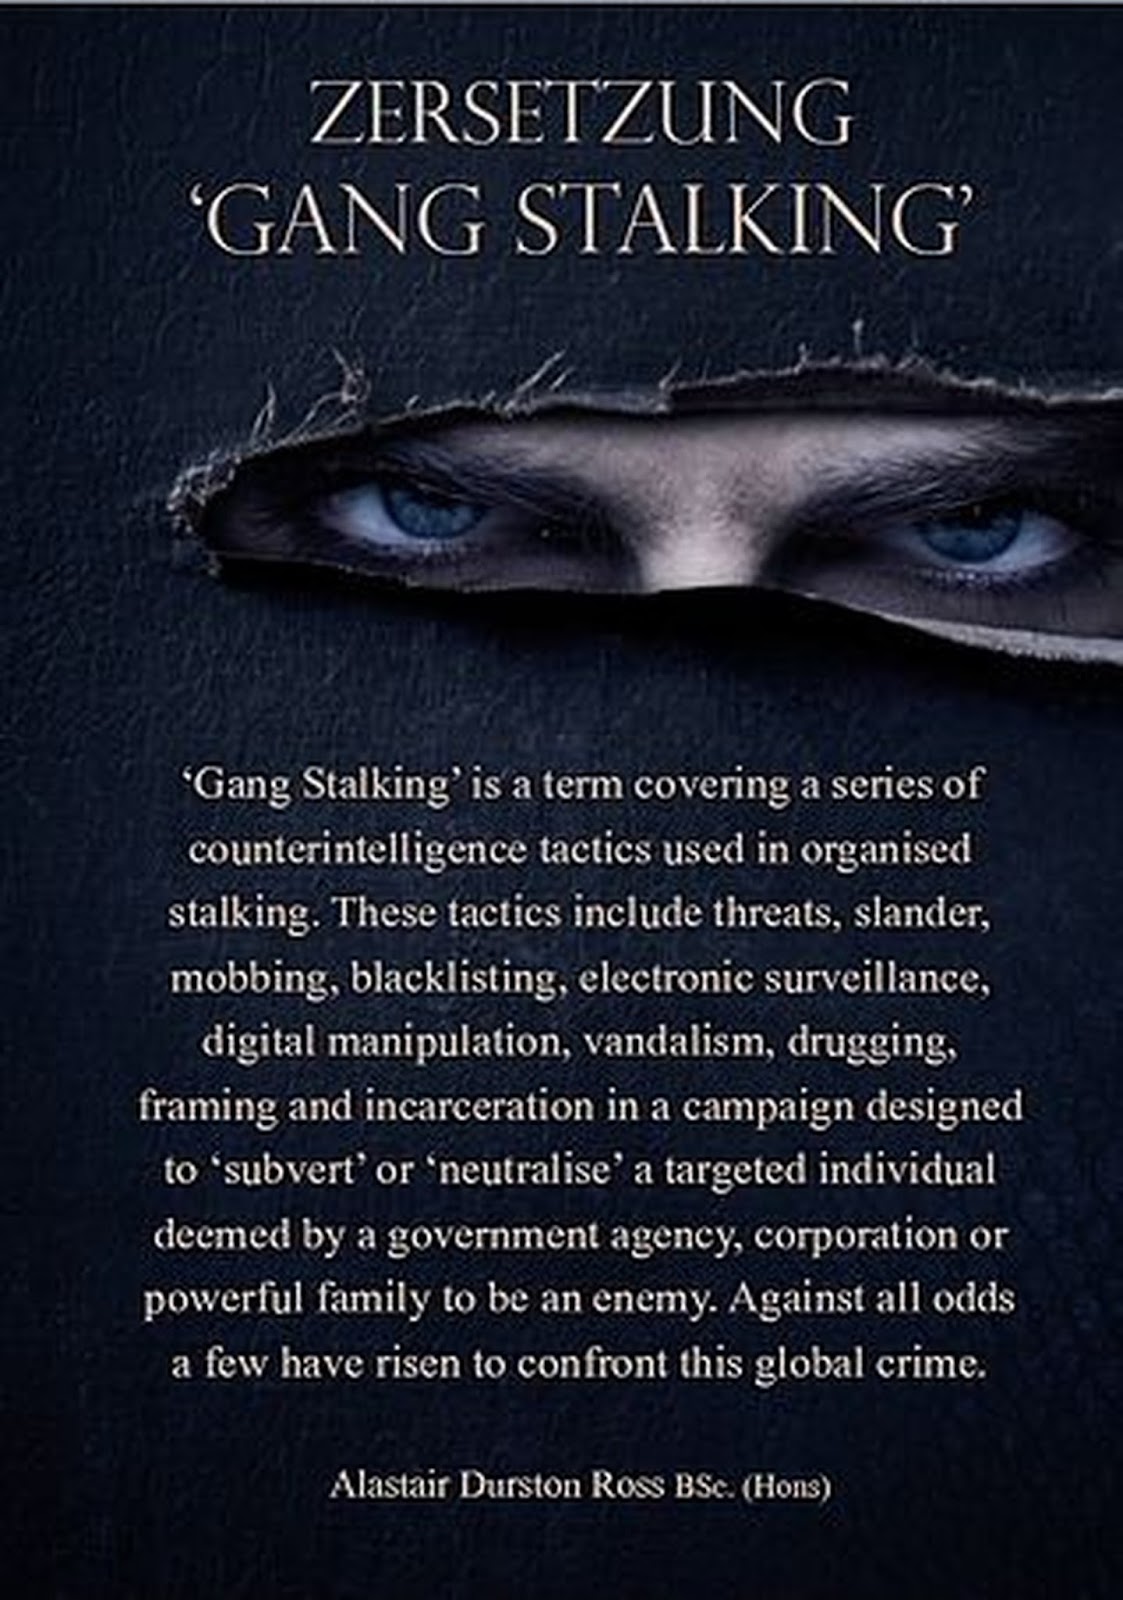 Zersetzung Gang Stalking (1)